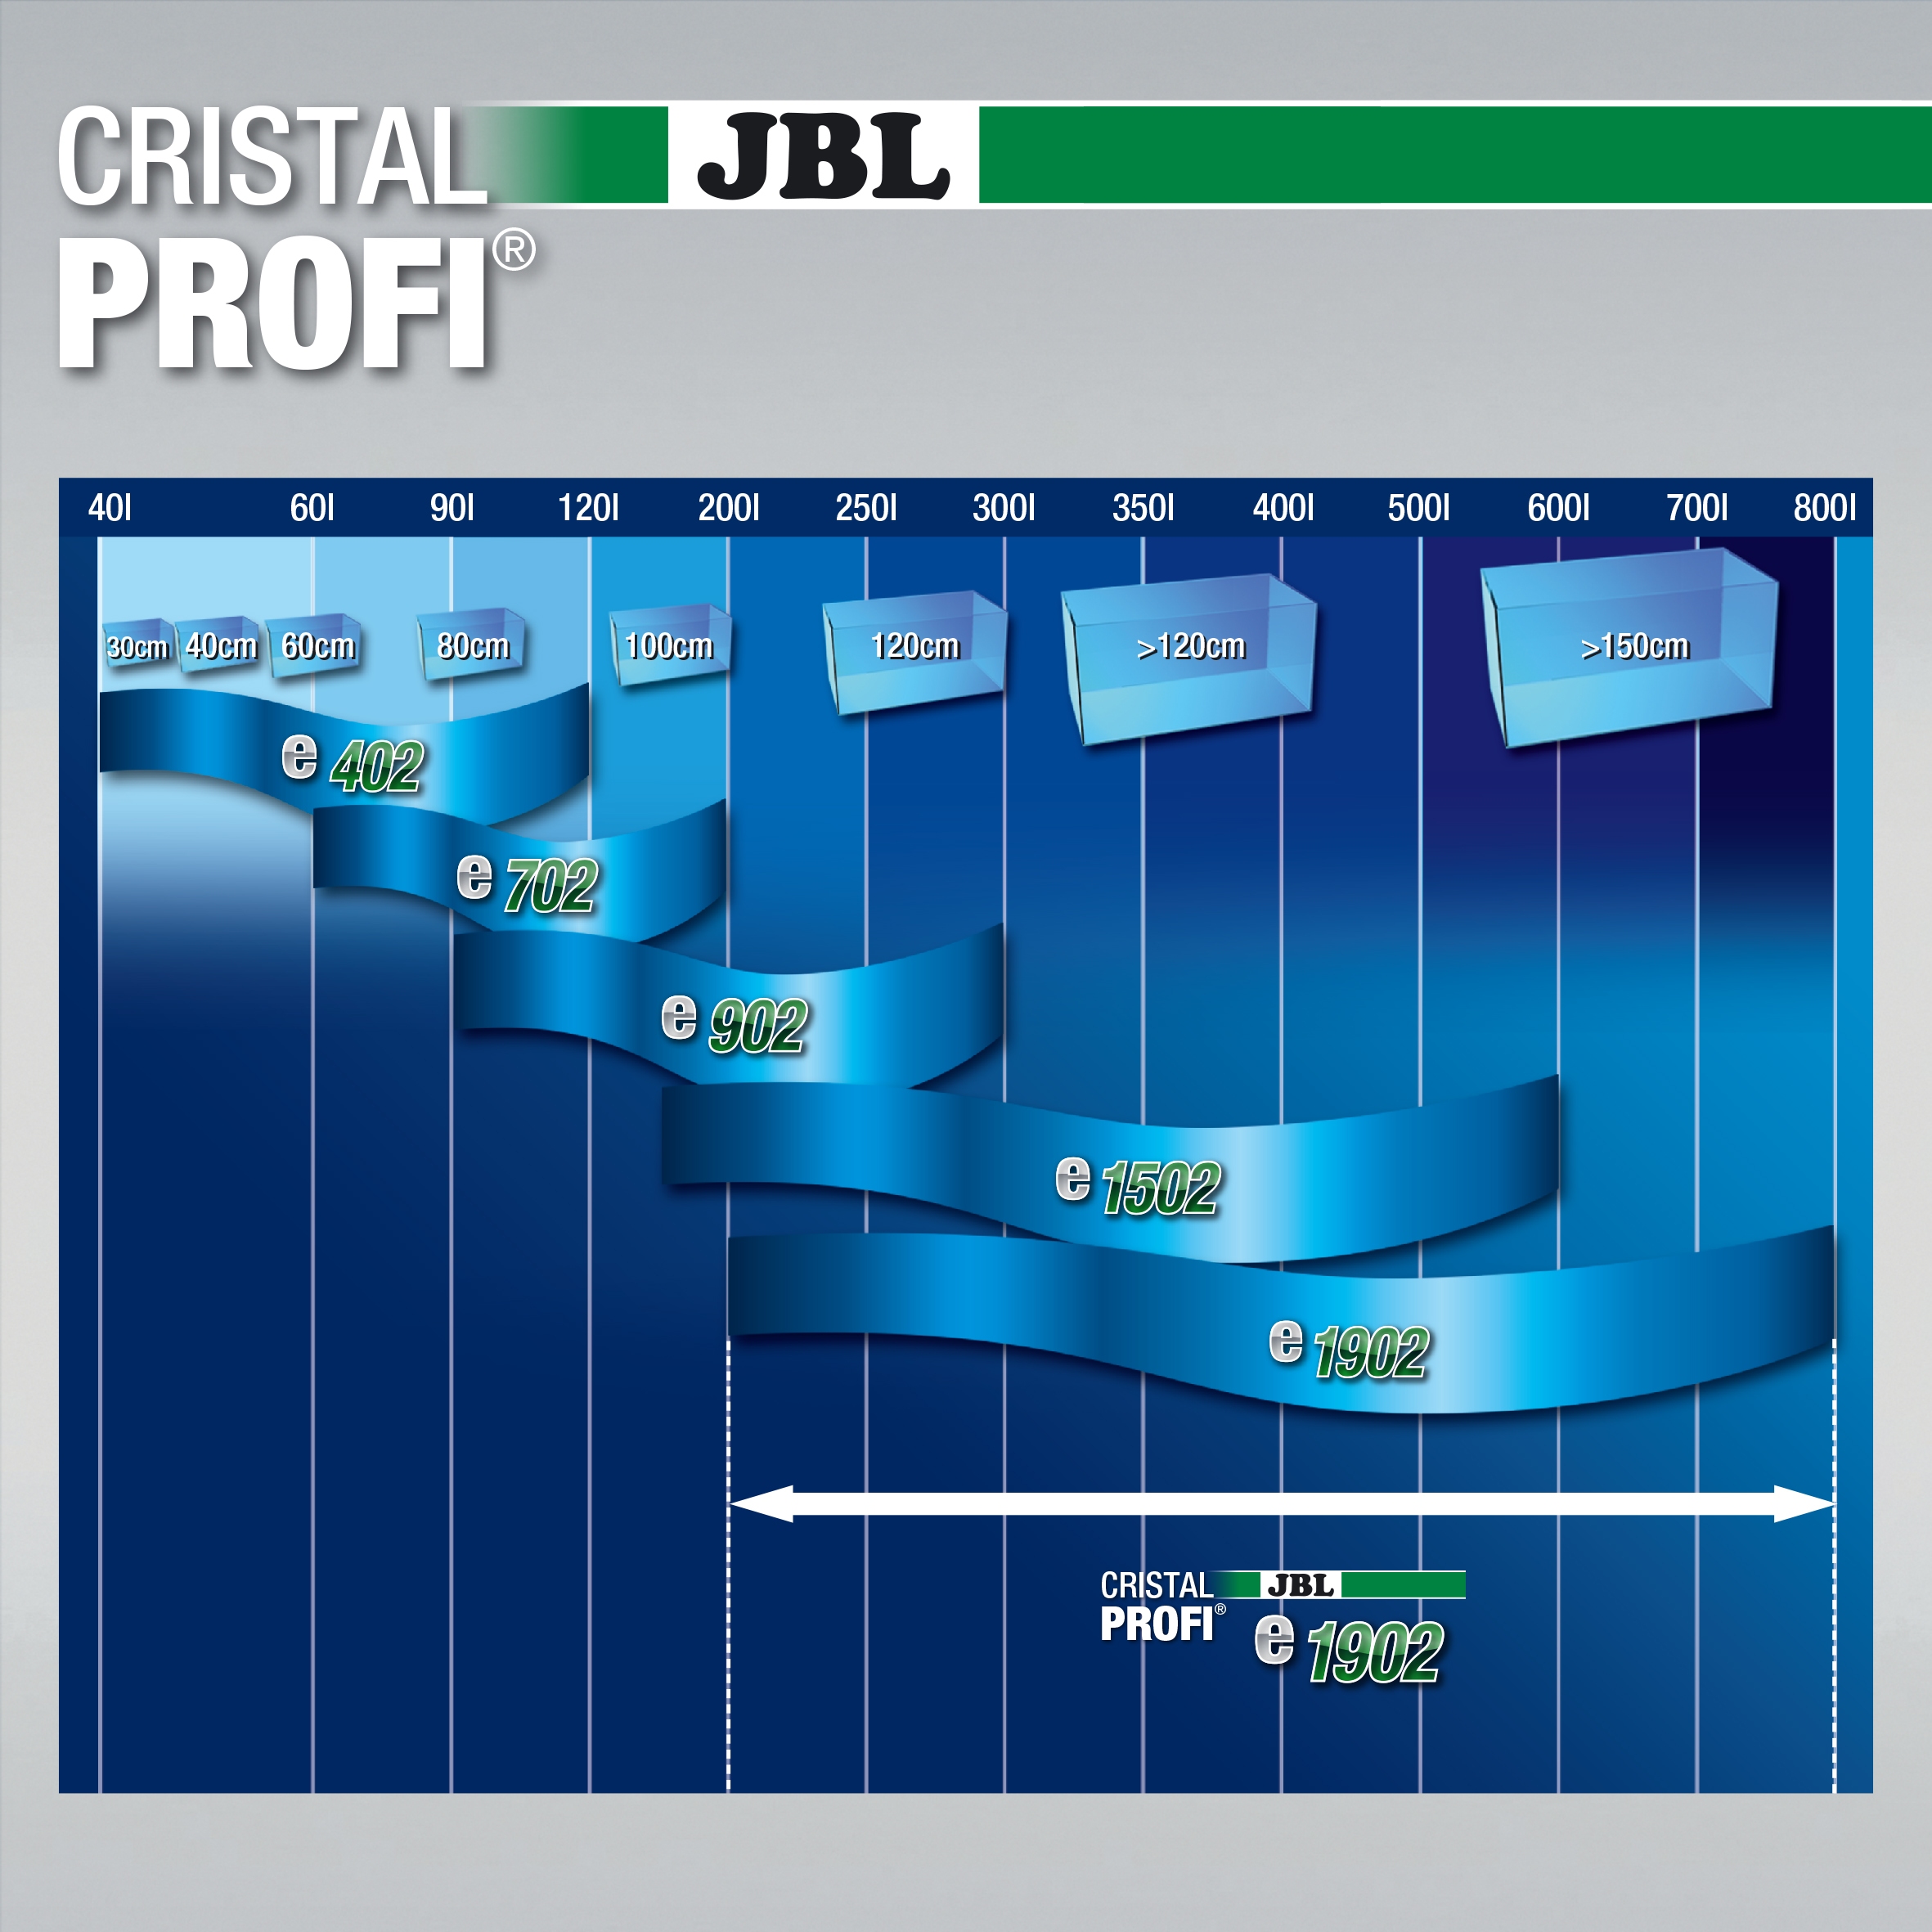 JBL CristalProfi e1902 